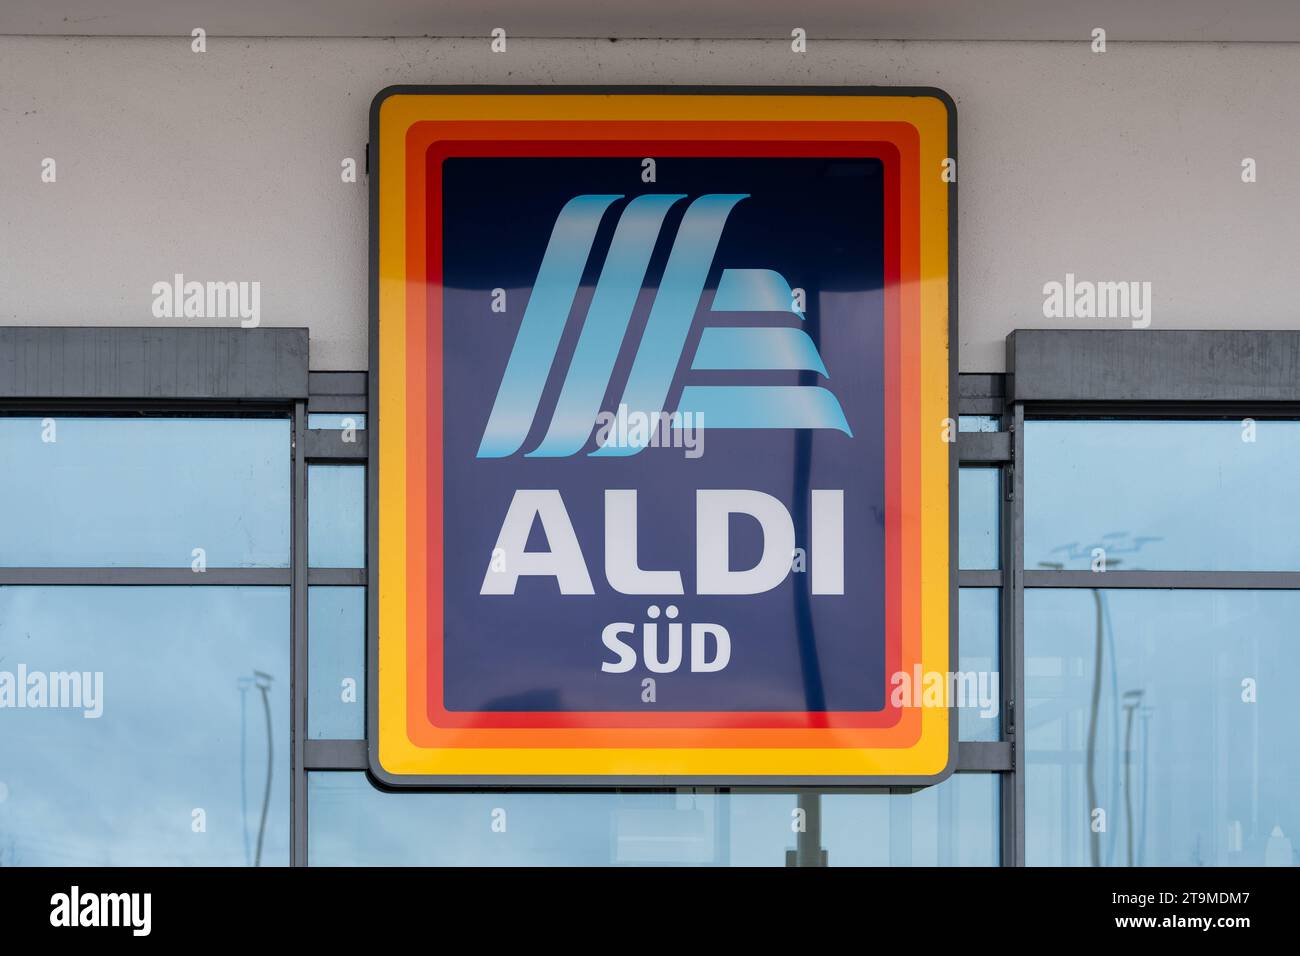 Parsdorf, Bavière, Allemagne - 26 novembre 2023 : Aldi Süd discounter alimentaire et logo de supermarché *** Aldi Süd Lebensmittel discounter und Supermarkt logo crédit : Imago/Alamy Live News Banque D'Images